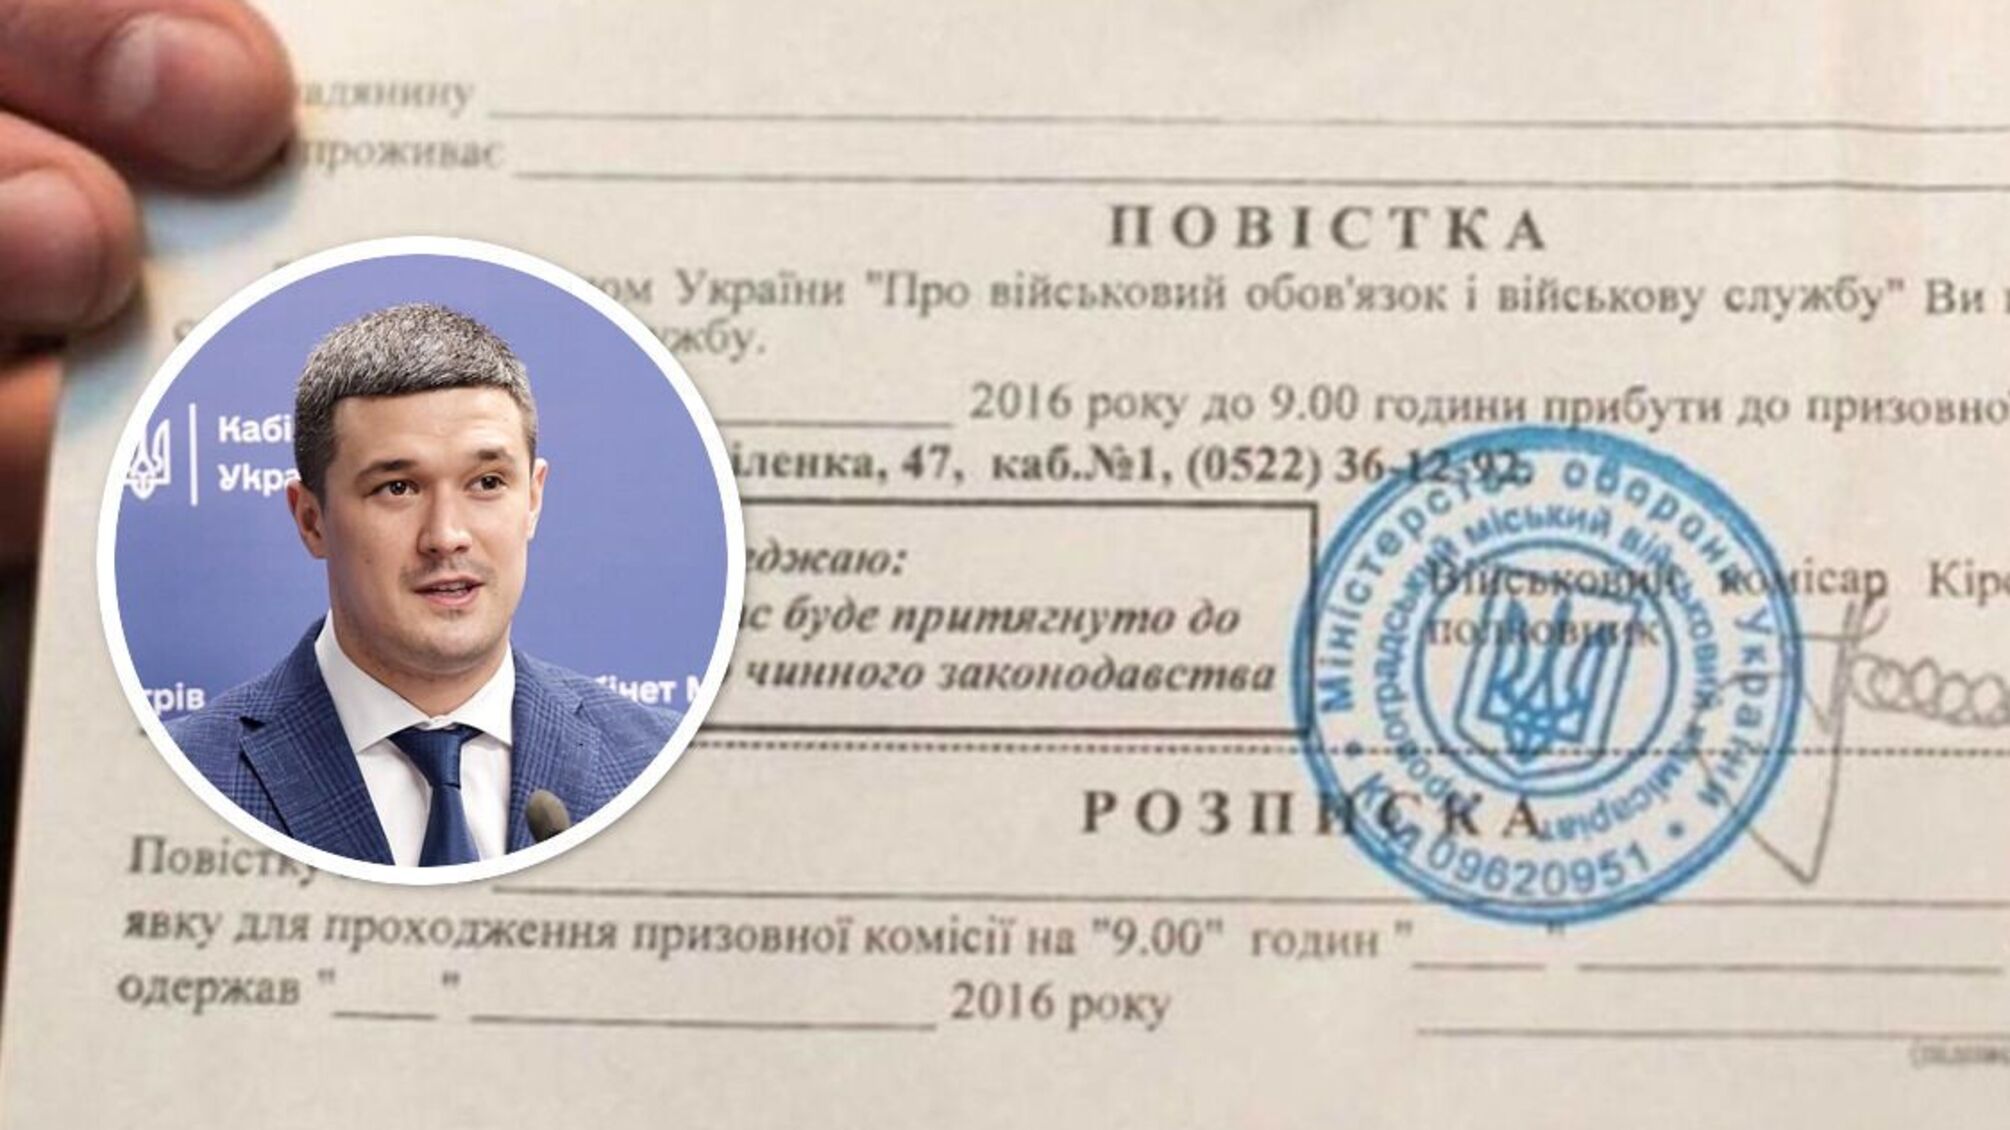 'Це неможливо зробити': міністр Федоров прокоментував розсилку повісток через месенджери